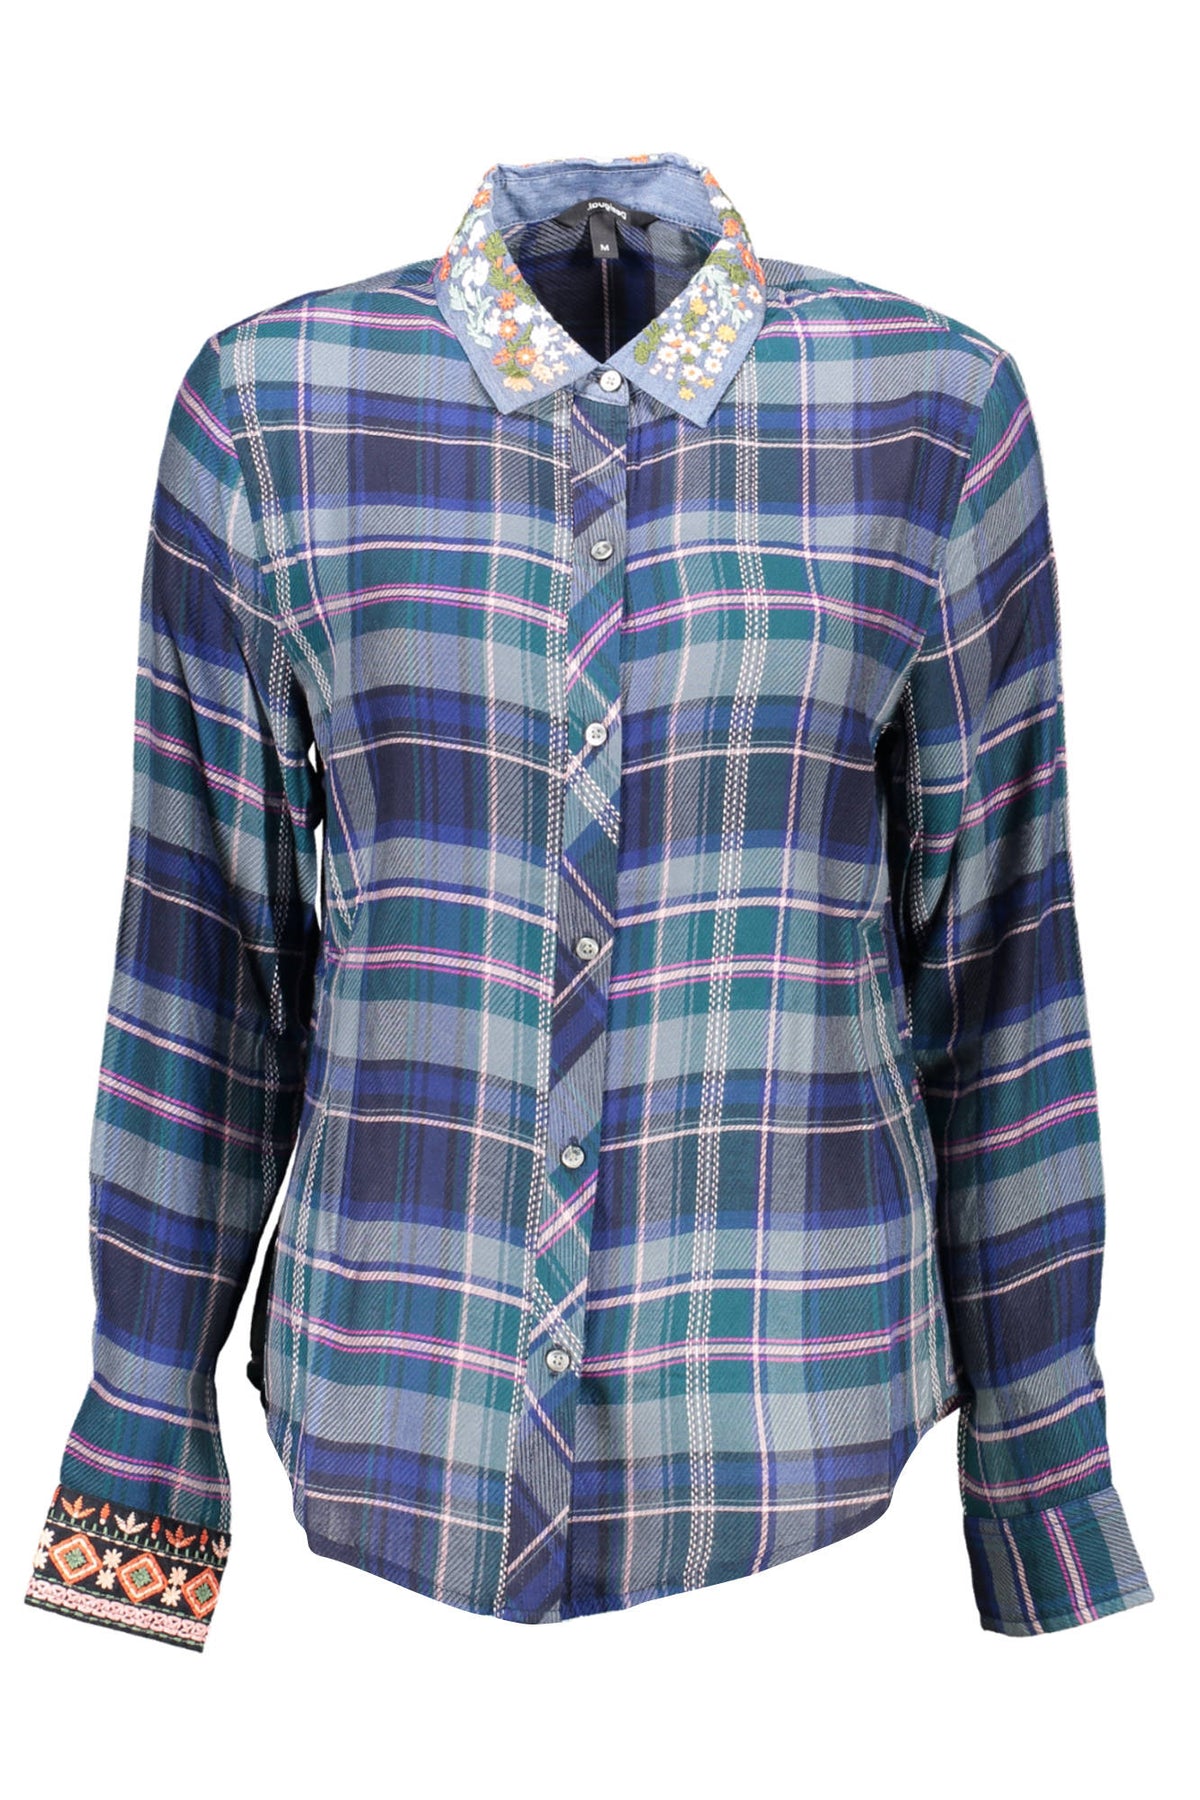 DESIGUAL Damen Hemd Bluse Freizeithemd Businesshemd mit Kragen, langärmlig